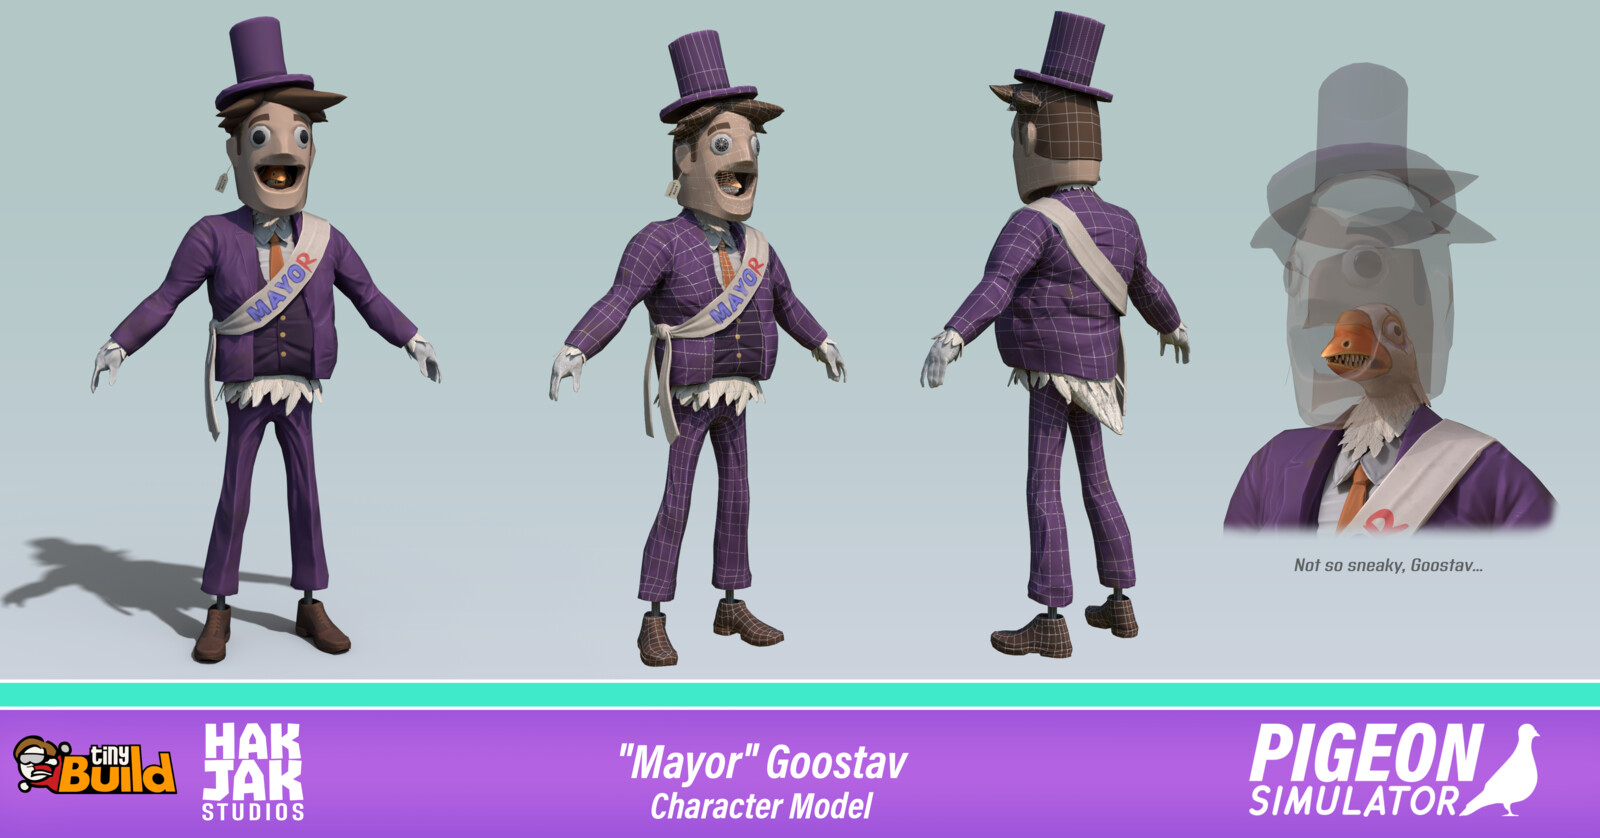 Goostav the Goose/Mayor Goostav - Character Models